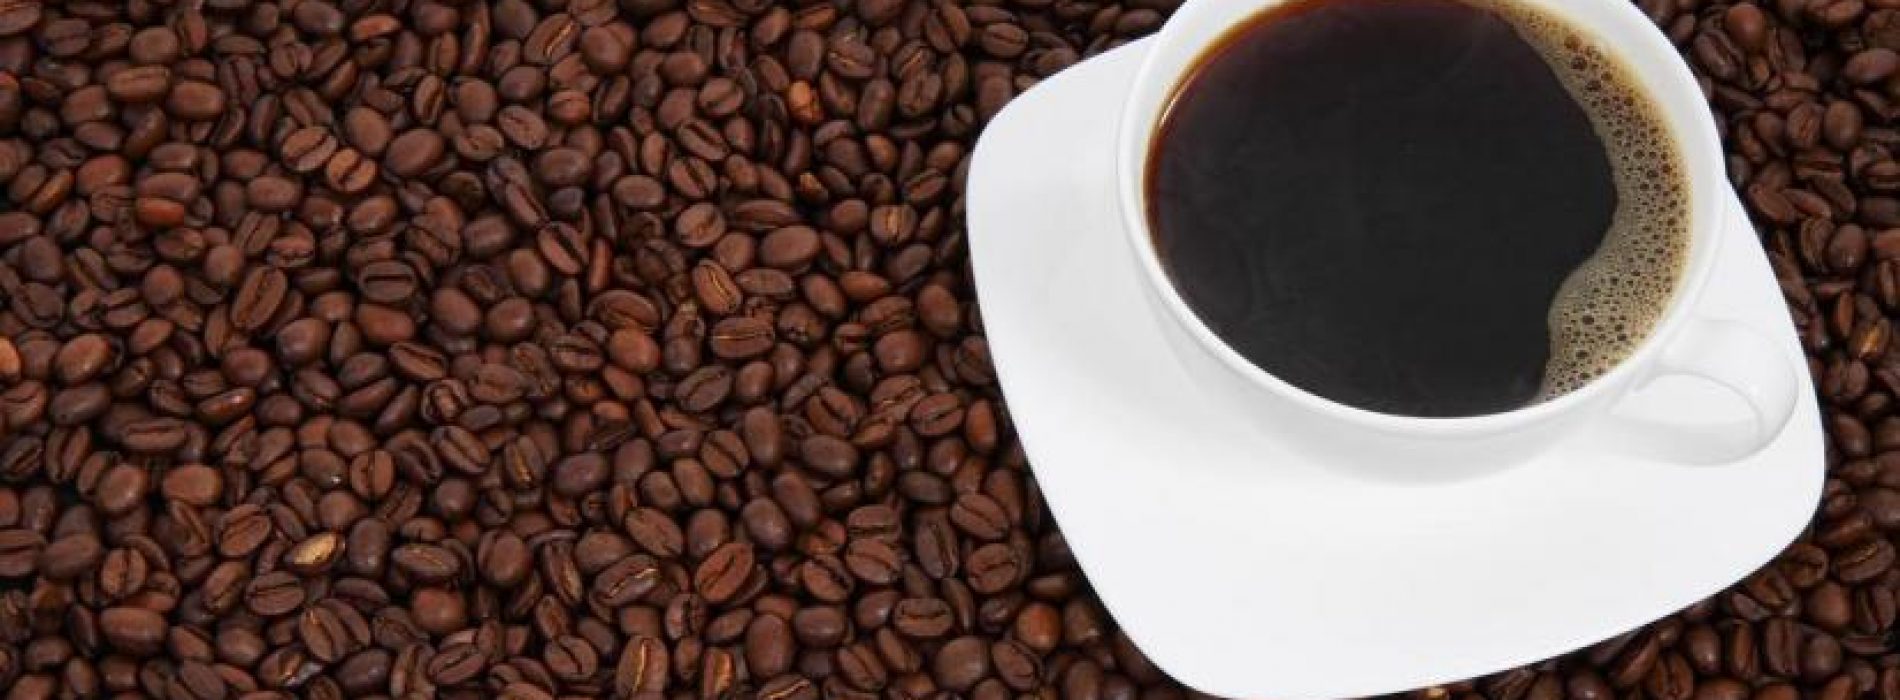 Tien manieren om je kopje koffie super gezond te maken